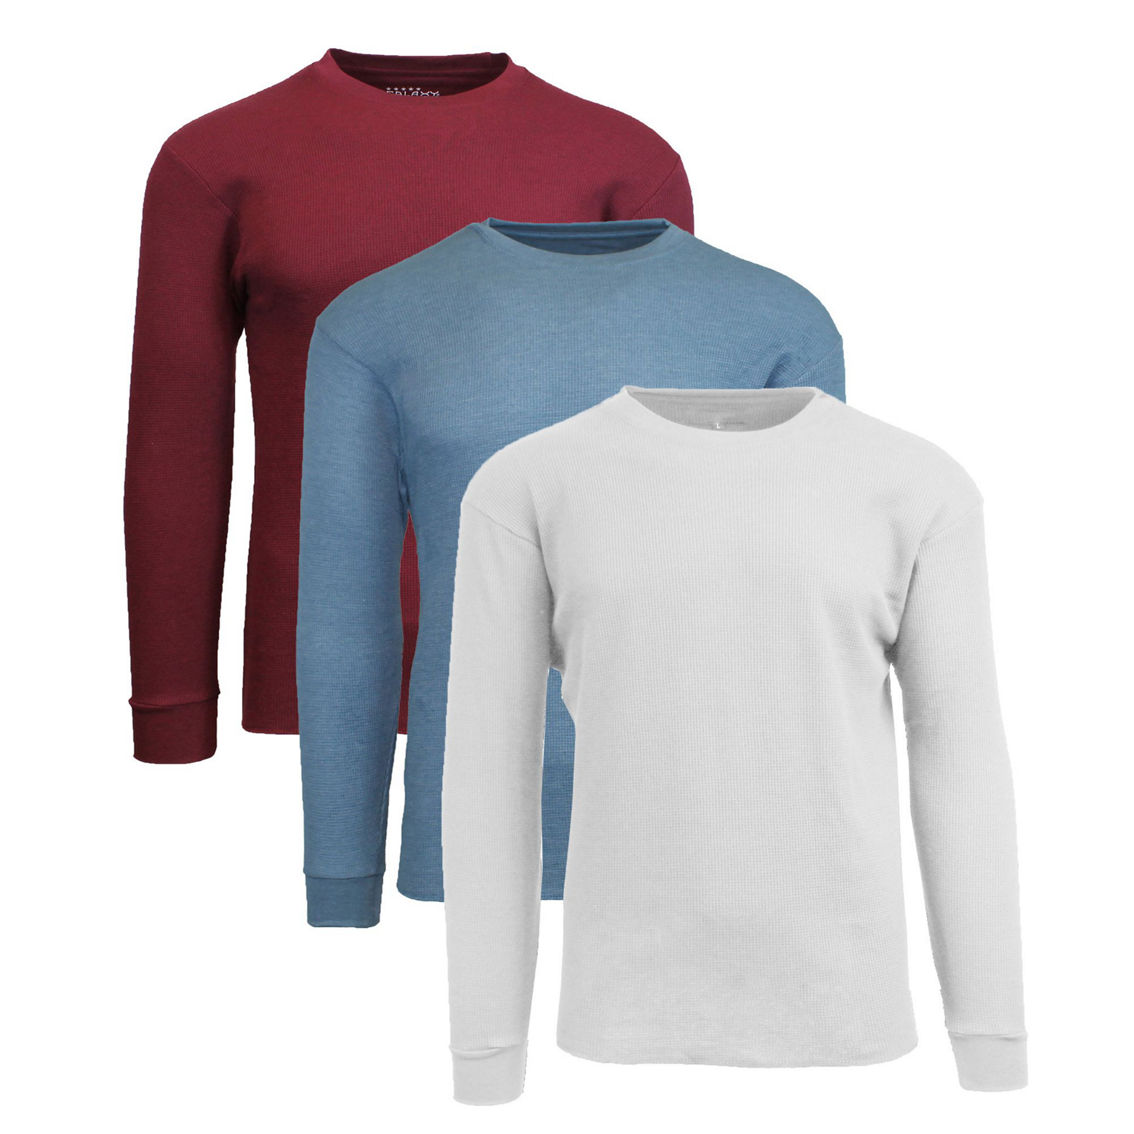 Galaxy By Harvic Men's Long Sleeve Thermal Shirts- 3 Pack | Shirts ...